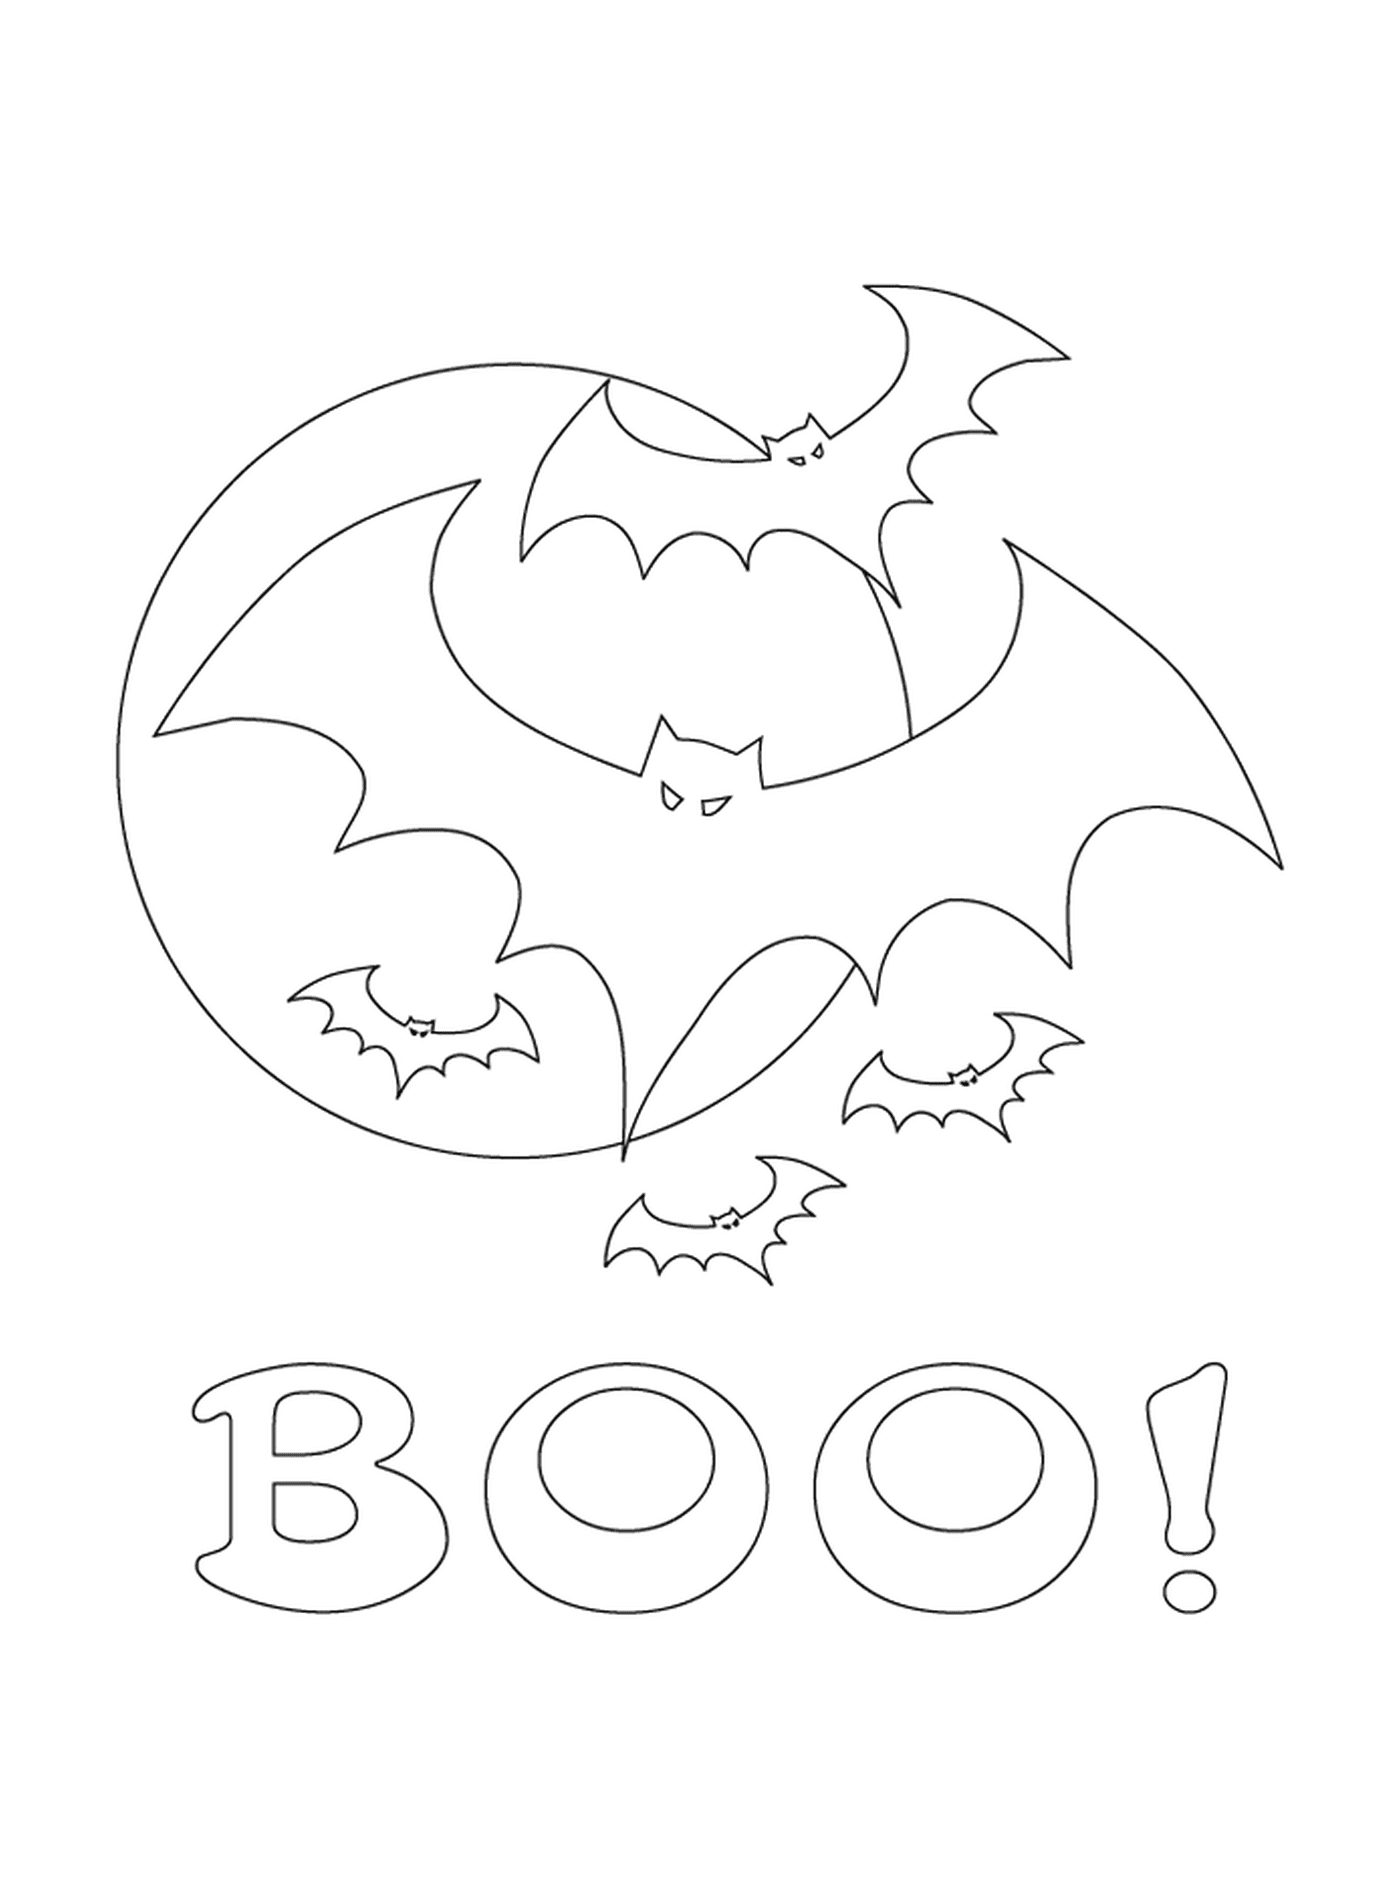  murciélago y la palabra Boo 